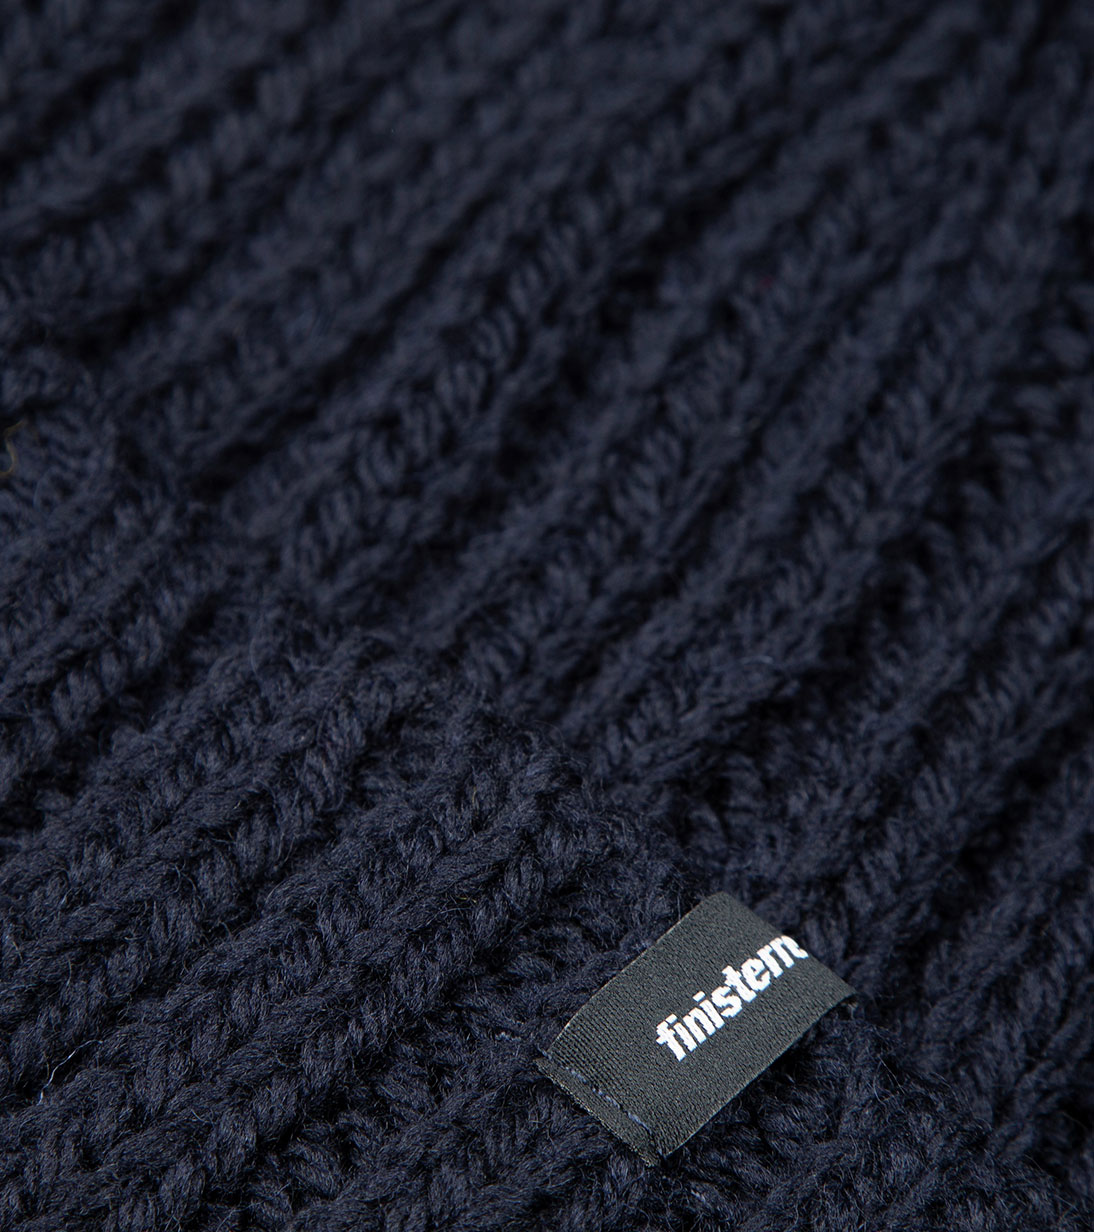 Made from: Merino wool